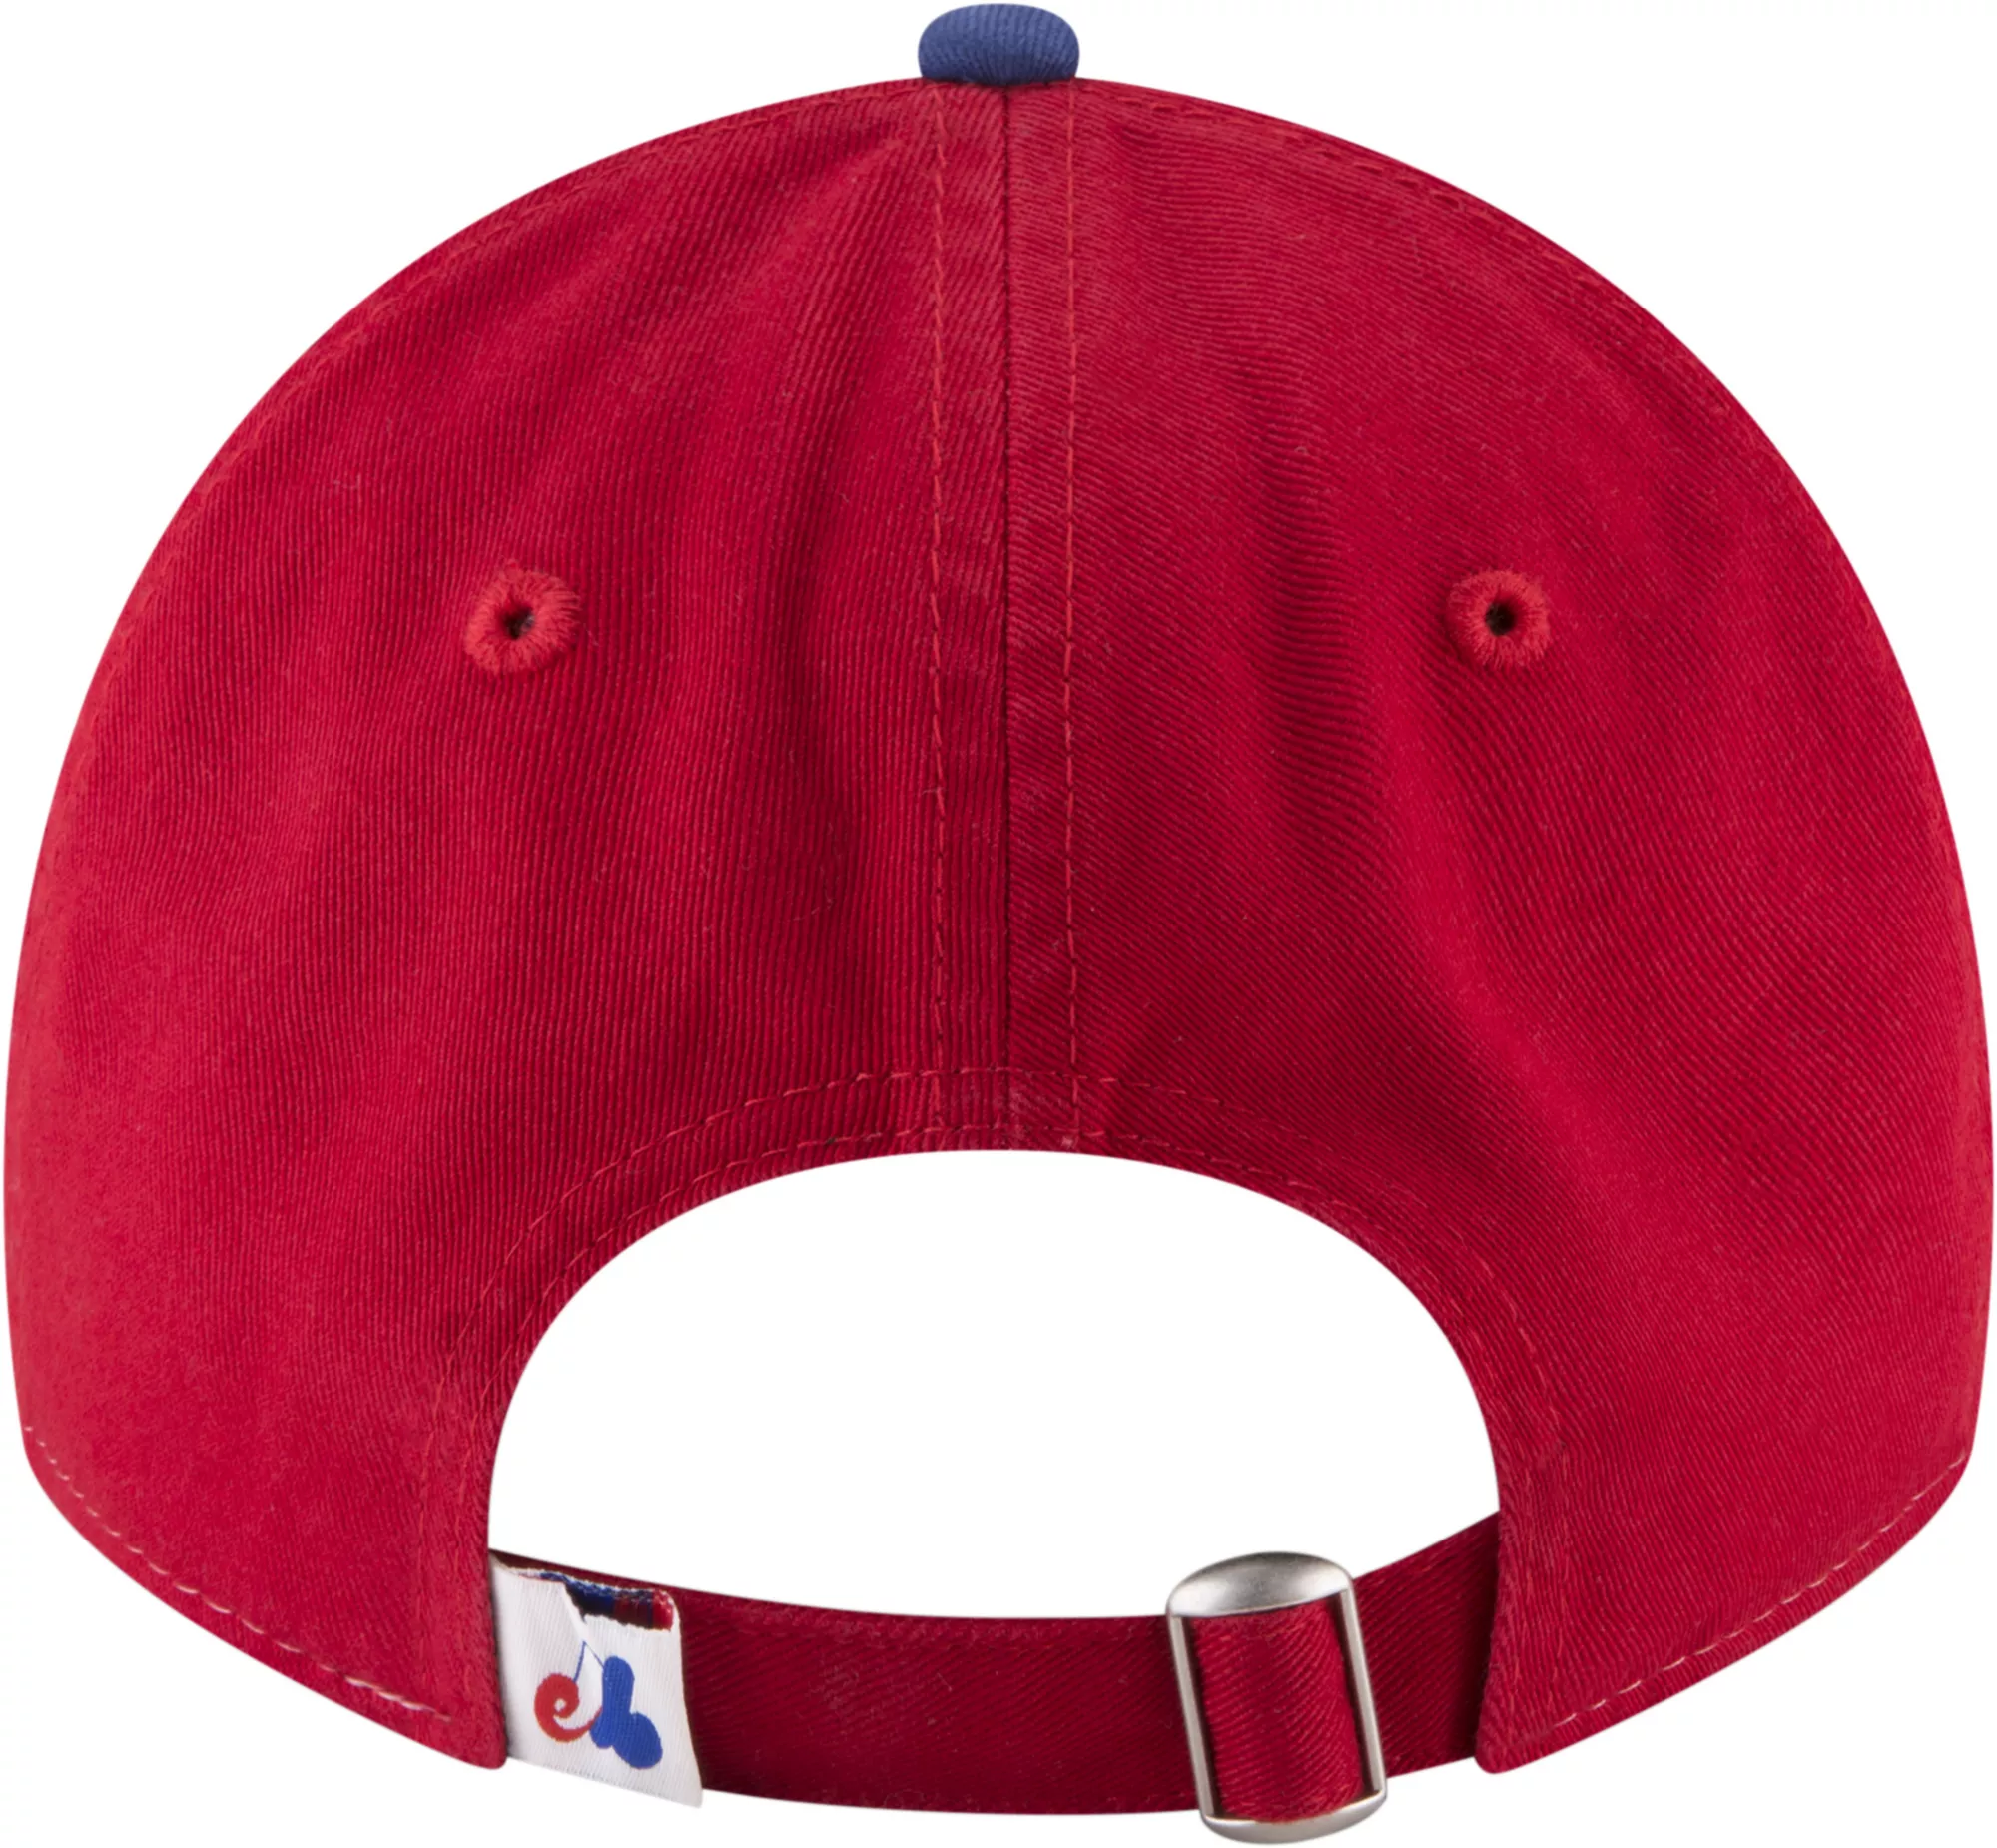 New Era Men's Montreal Expos Cooperstown Core Classic 9Twenty Adjustable Hat